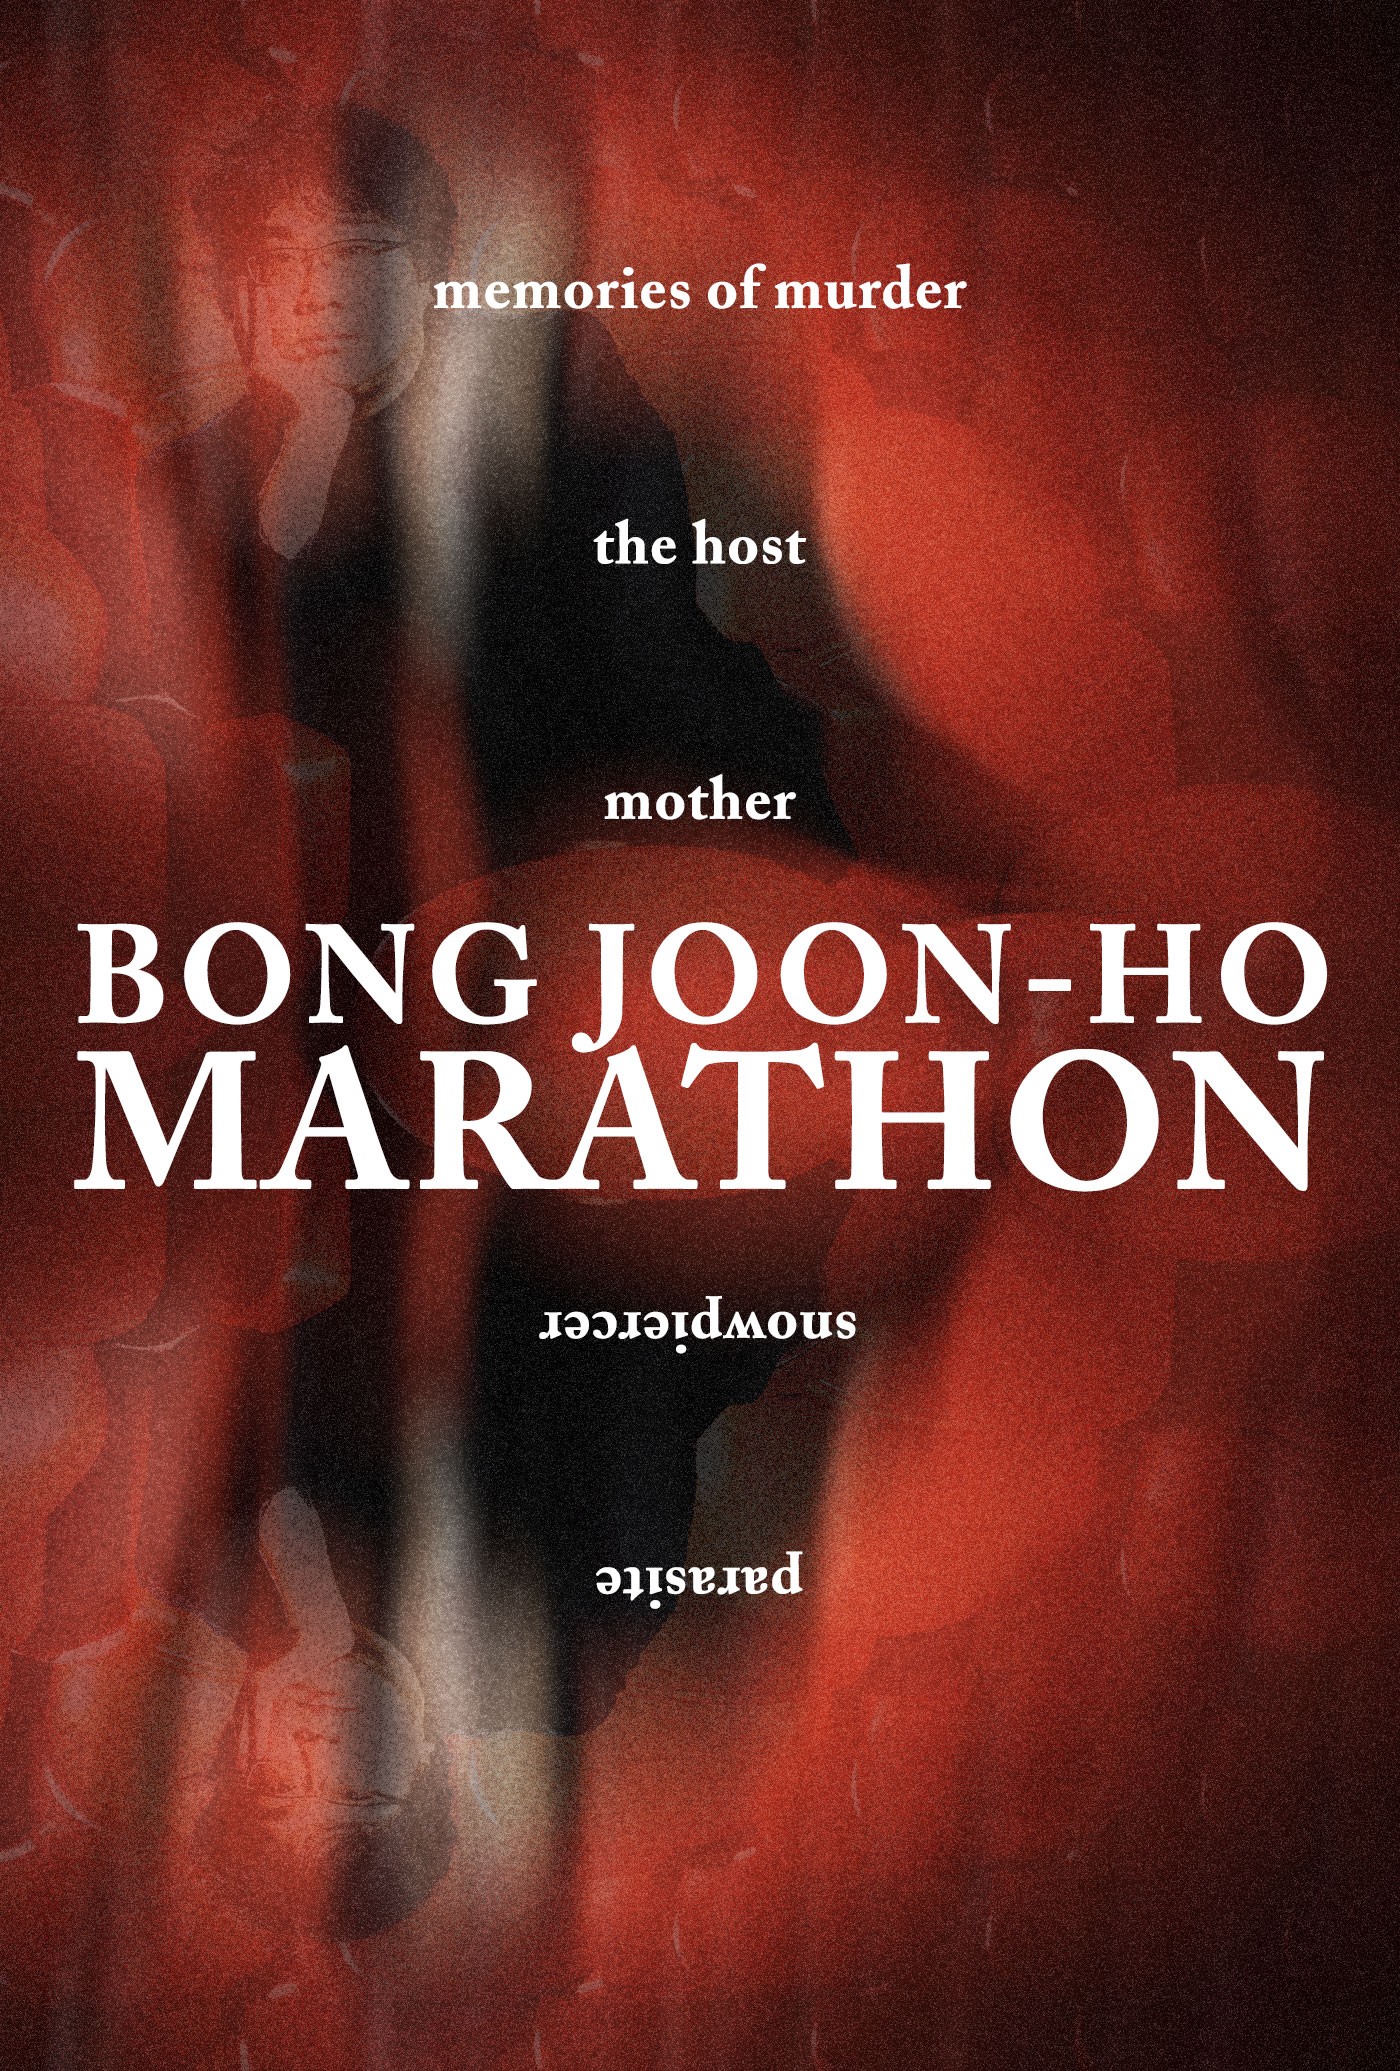 A BONG JOON-HO MARATHON